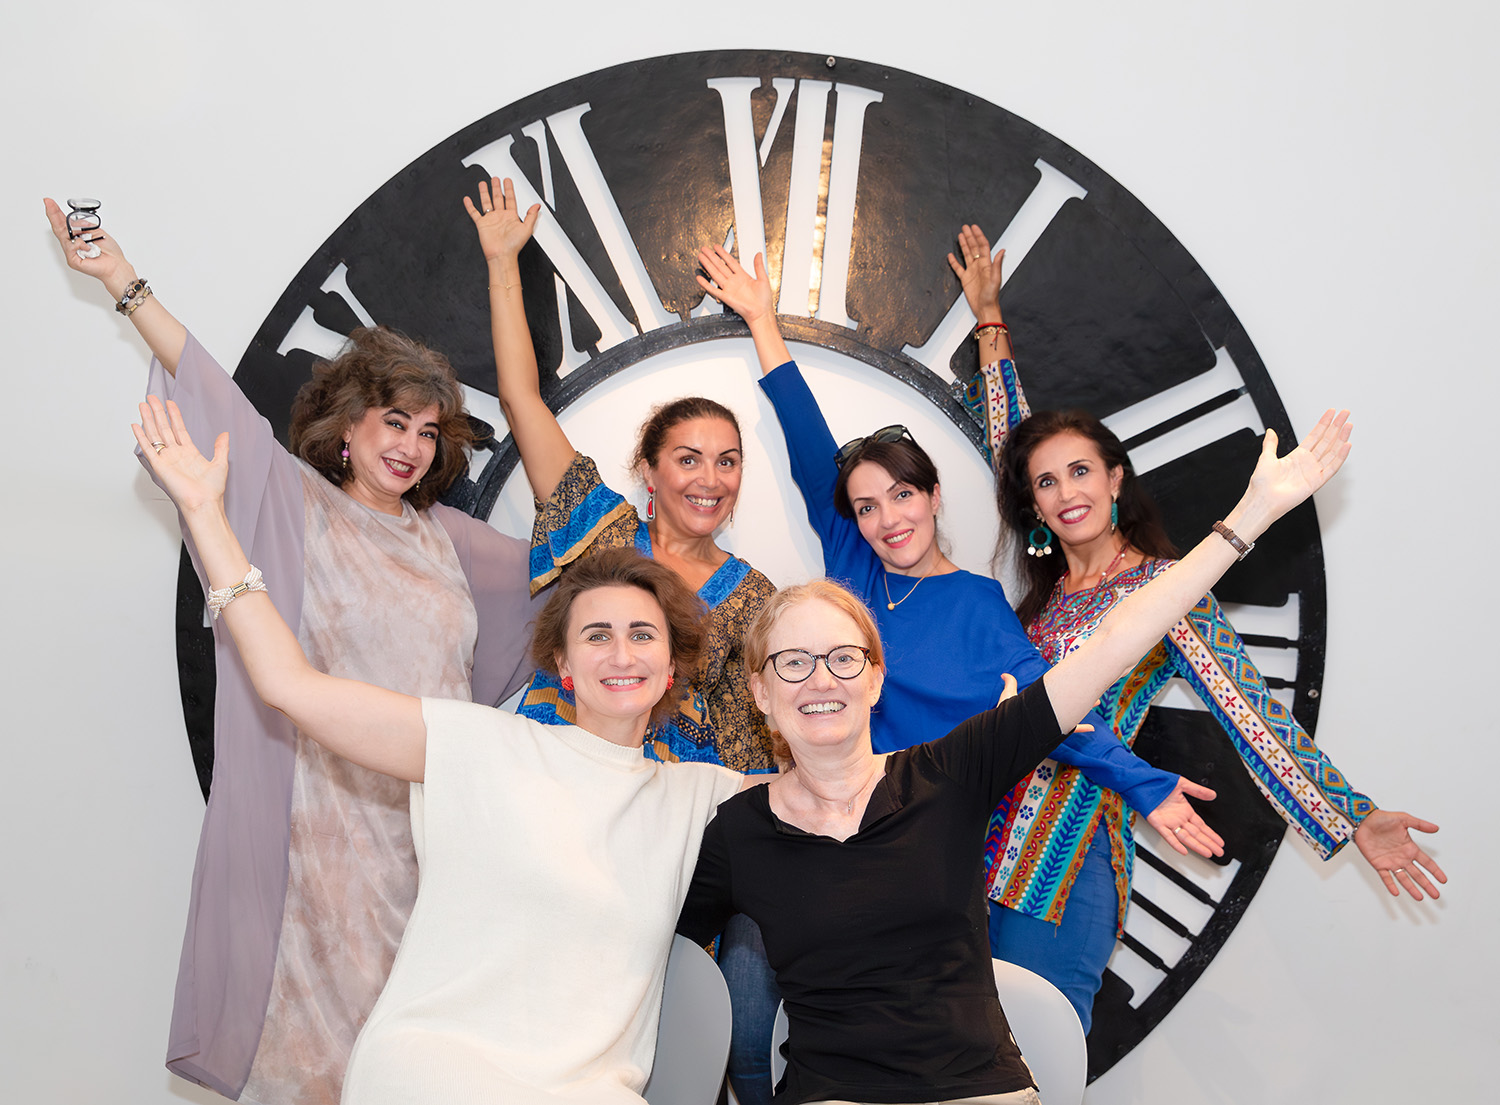 Gruppenfoto von 12 Kurator:innen die ihre Arme in die Luft strecken vor einem großen Ziffernblatt einer Uhr